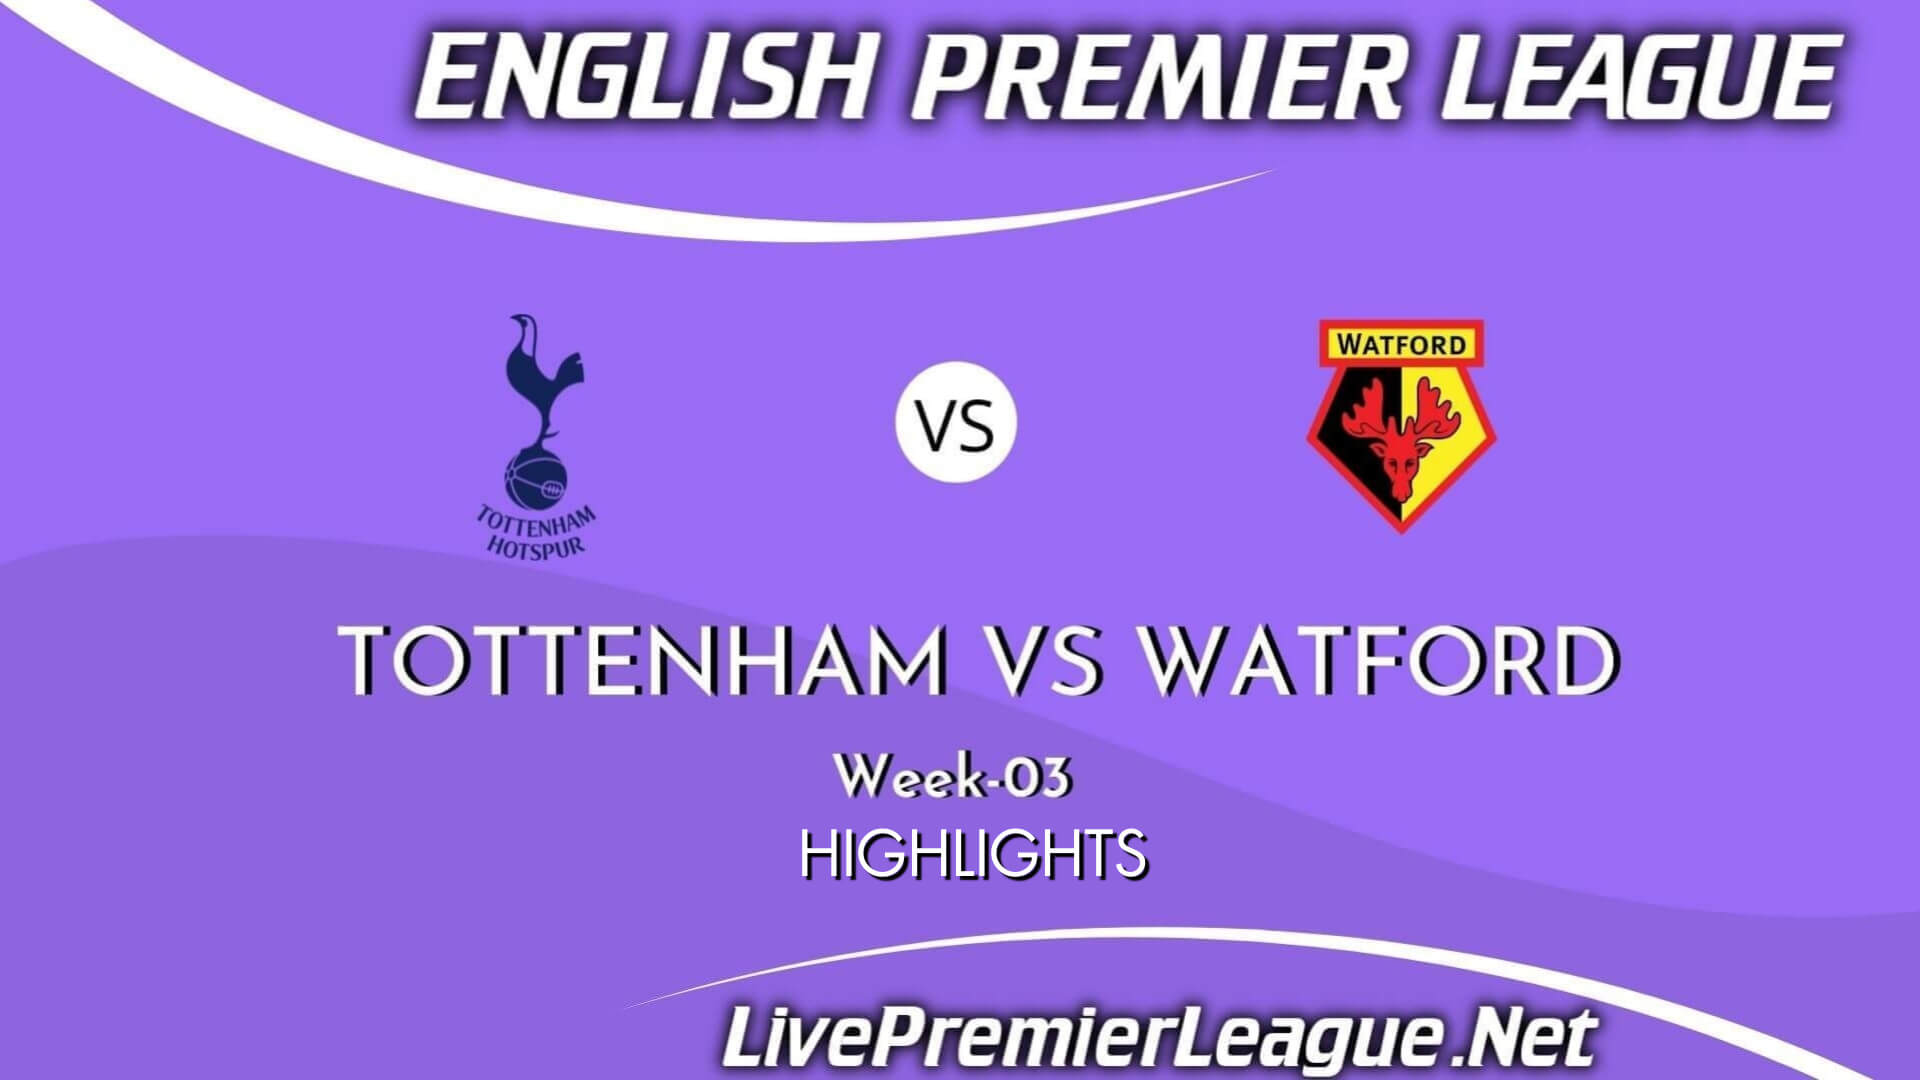 Tottenham Hotspur Vs Watford Highlights 2021 Week 3